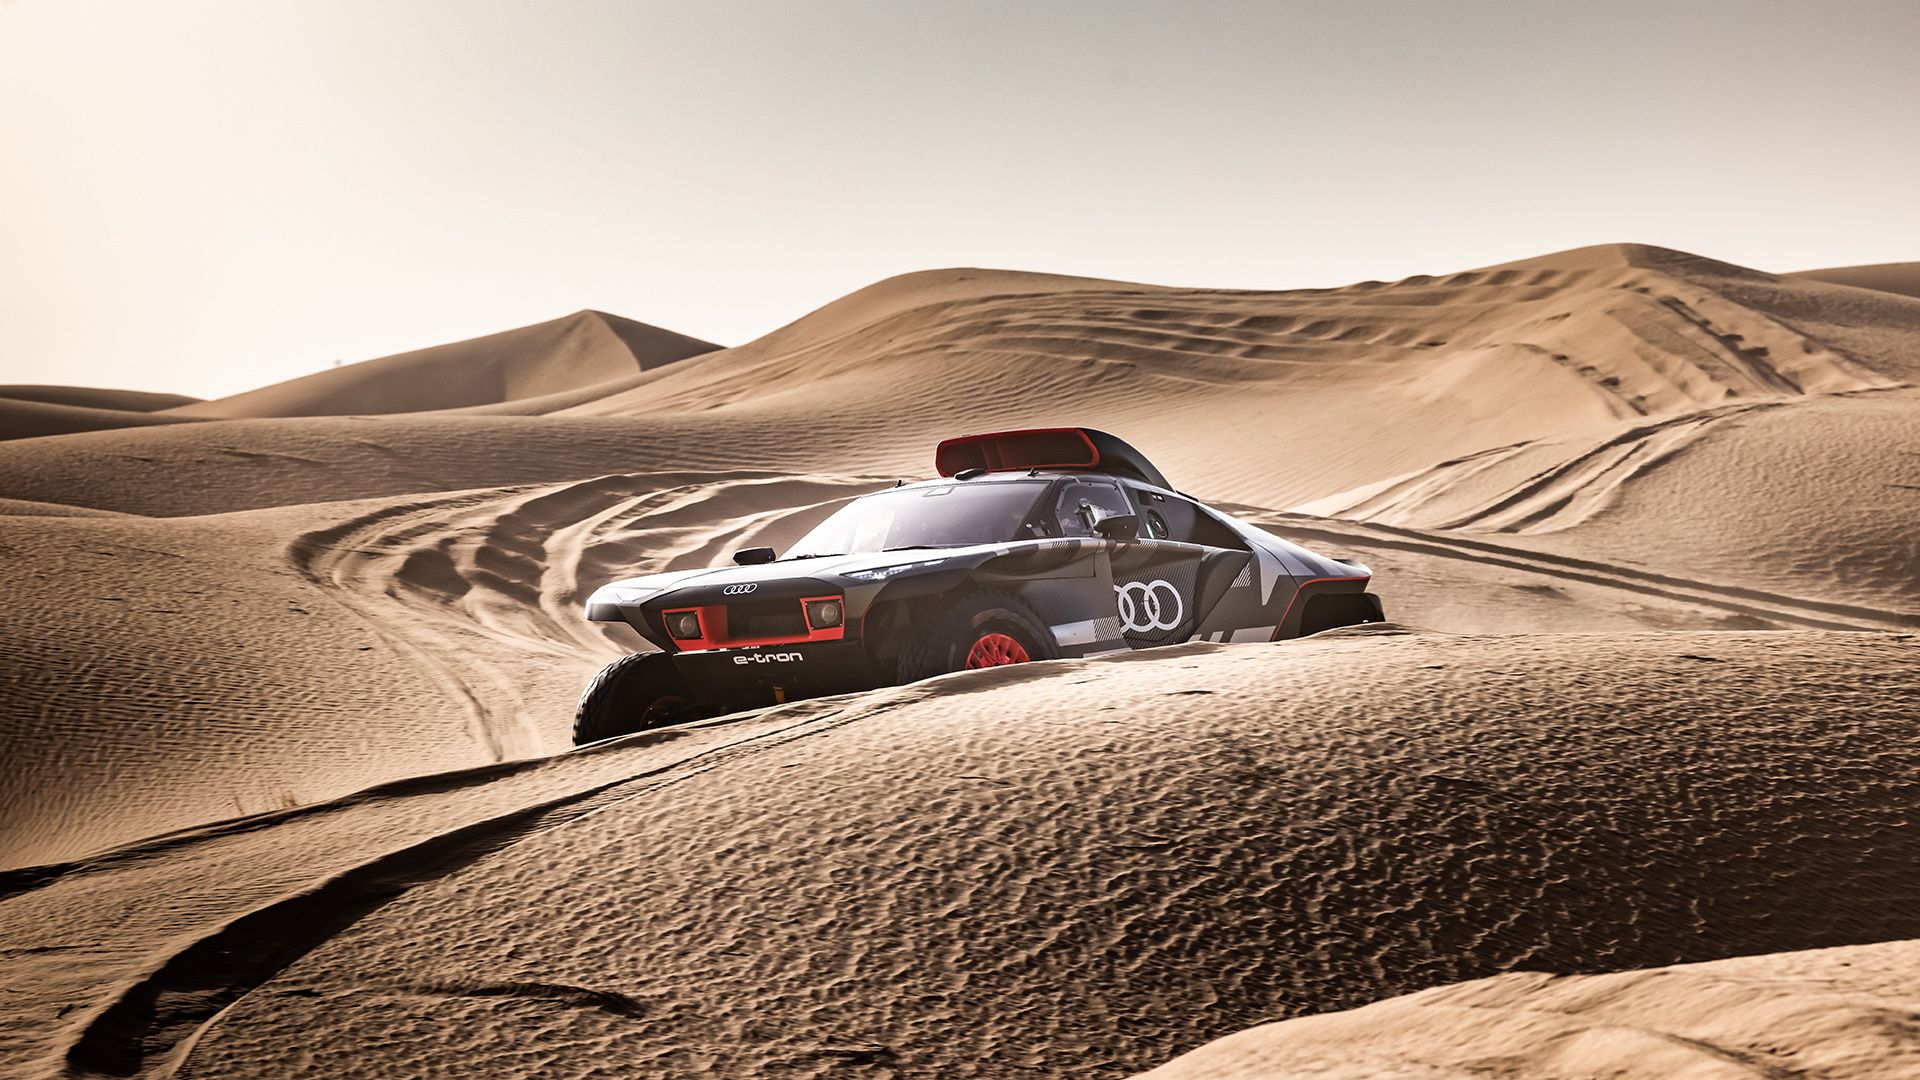 De Audi RS Q e-tron tijdens zijn rit door de woestijn.